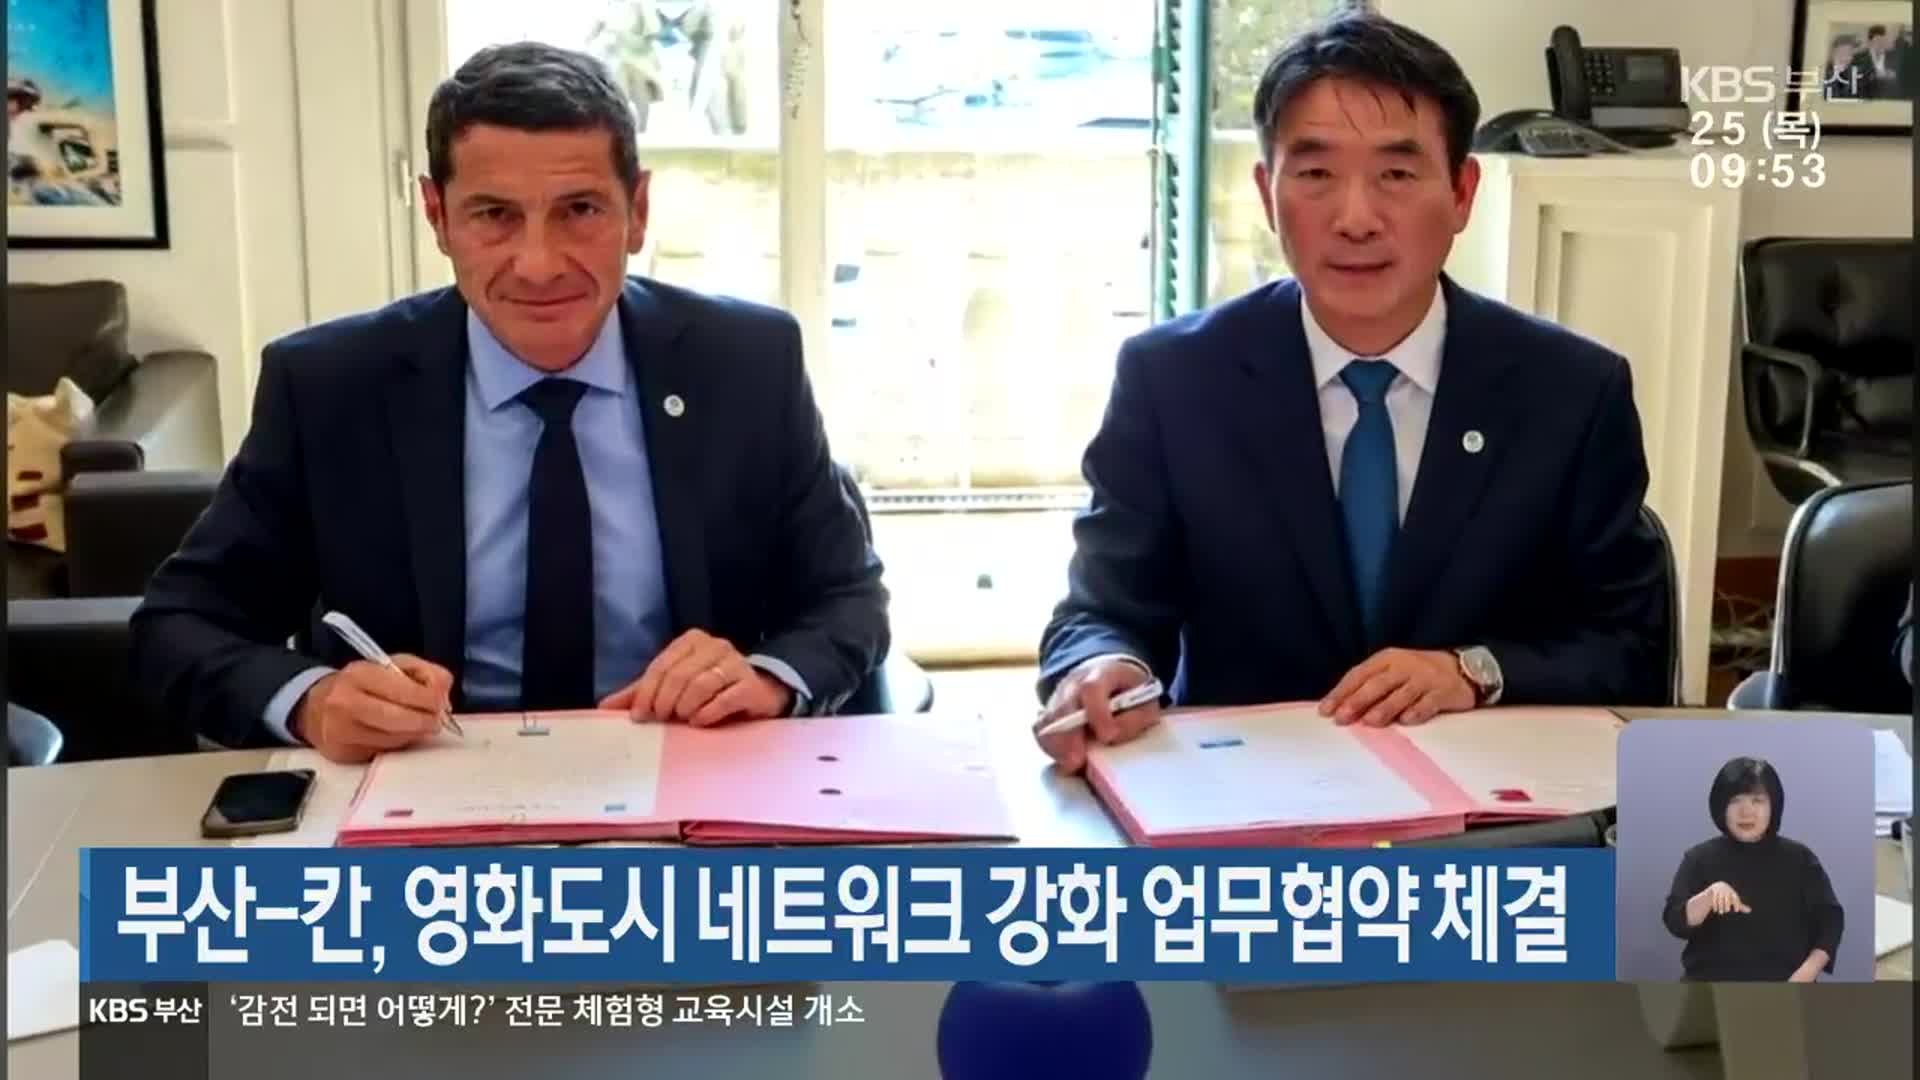 부산-칸, 영화도시 네트워크 강화 업무협약 체결